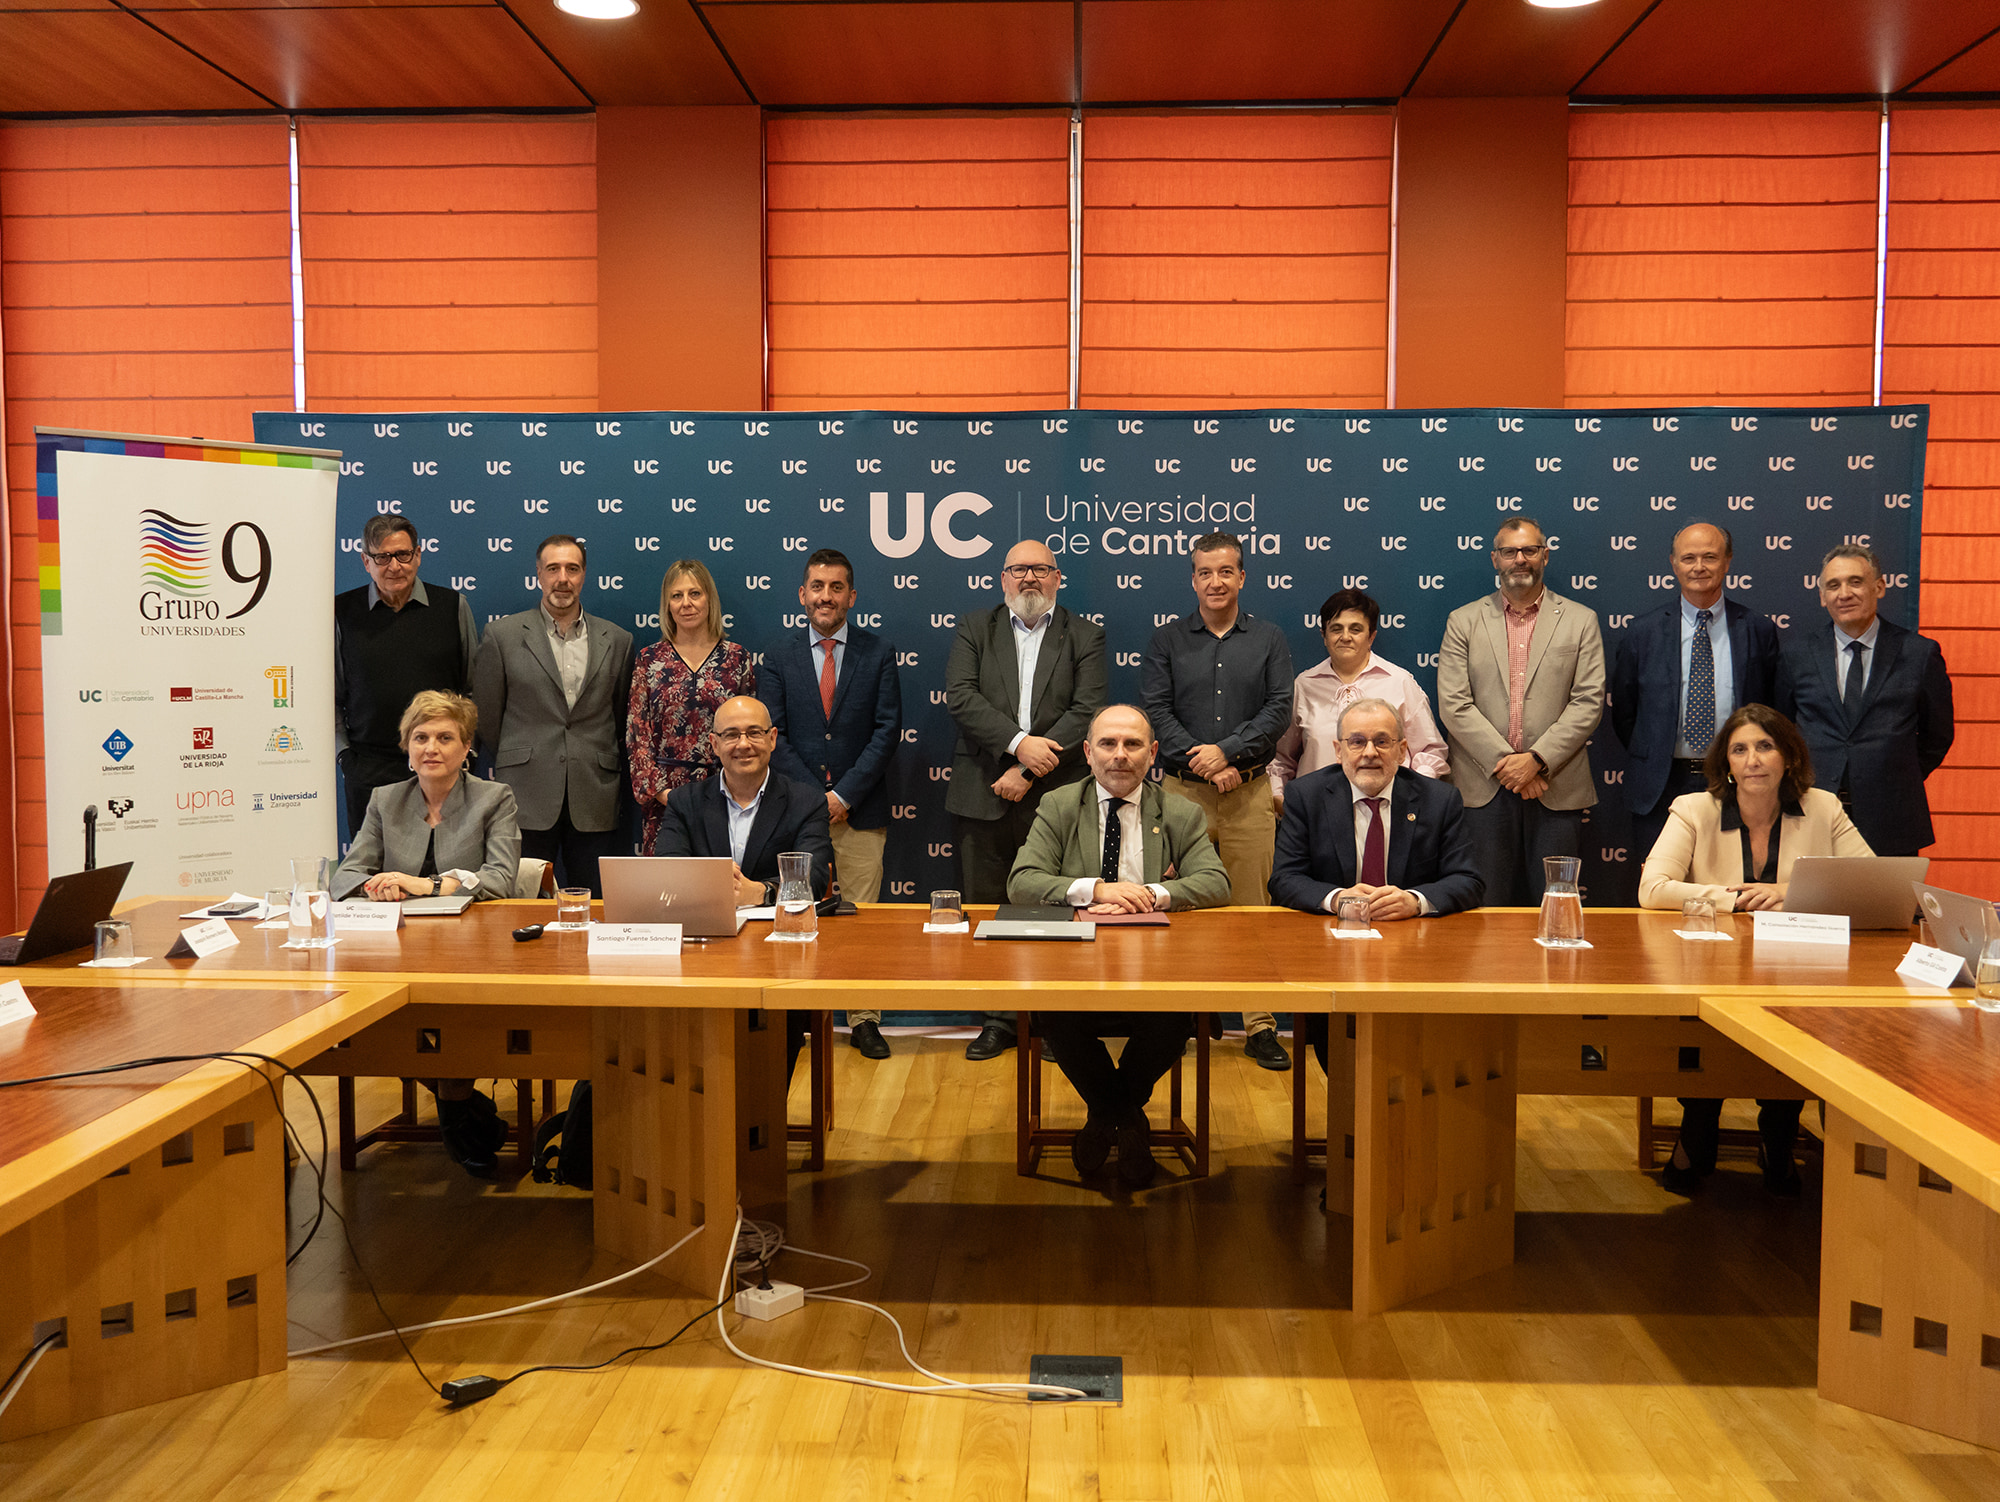 Las universidades del G-9 debaten sobre reformas y optimización de servicios en el ámbito gerencial